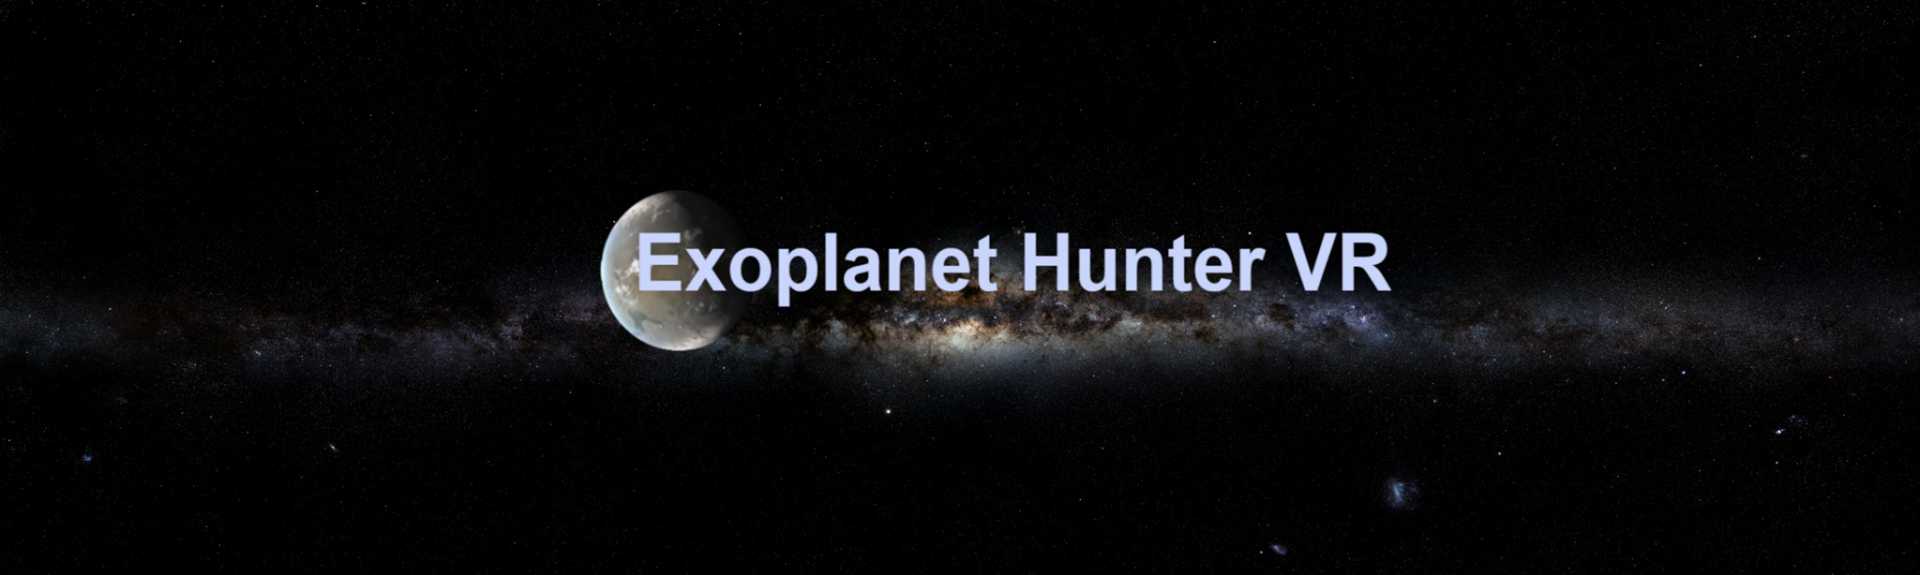 Exoplanethunter